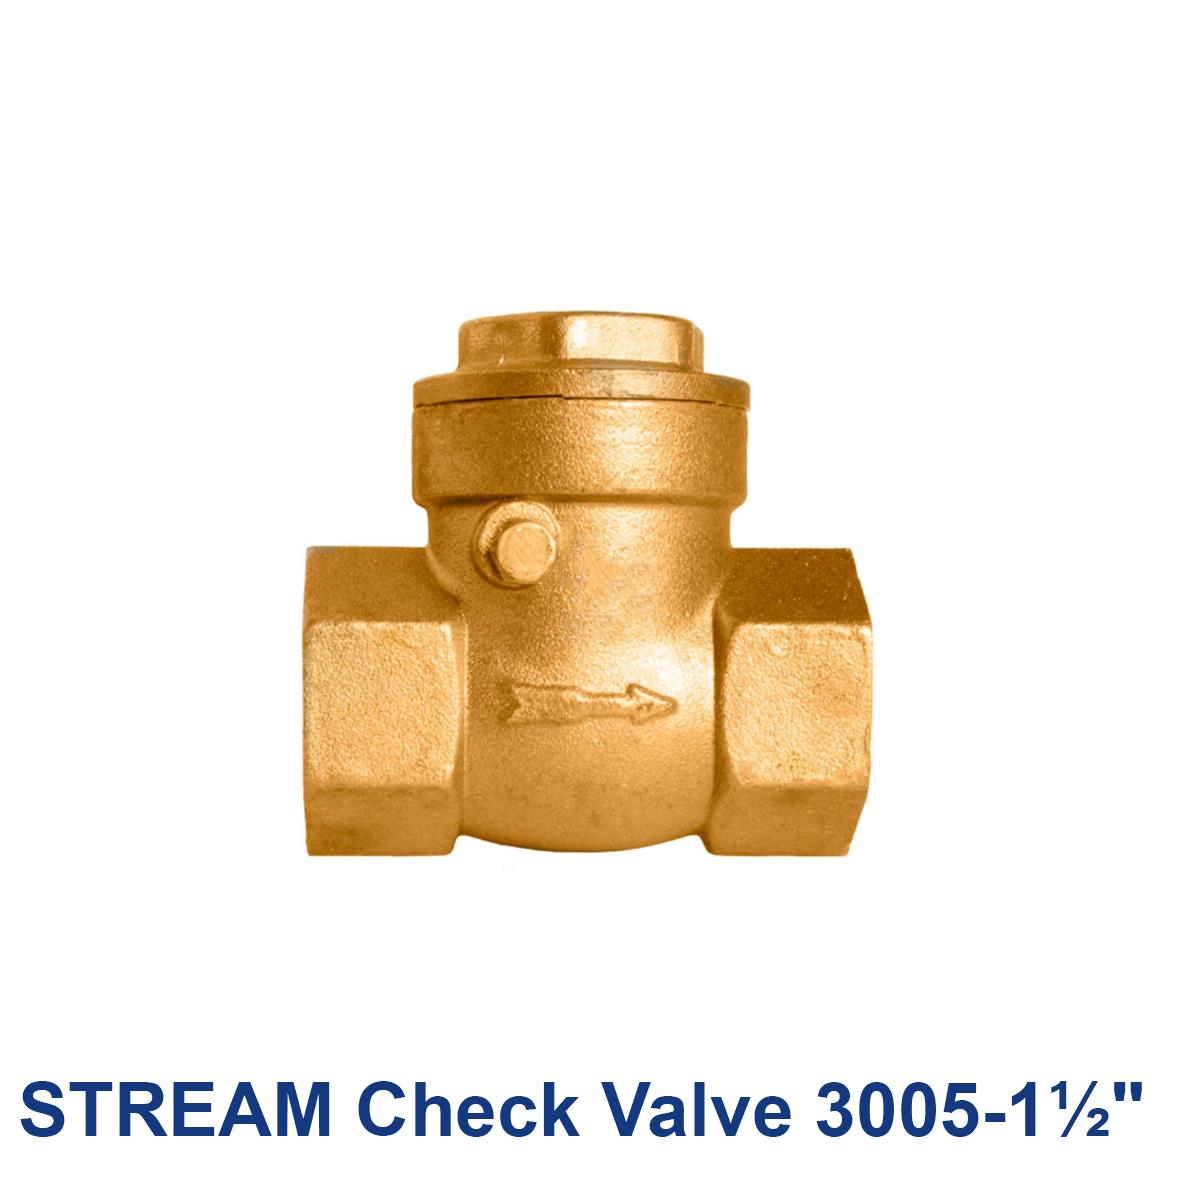 STREAM-Check-Valve-3005-1½